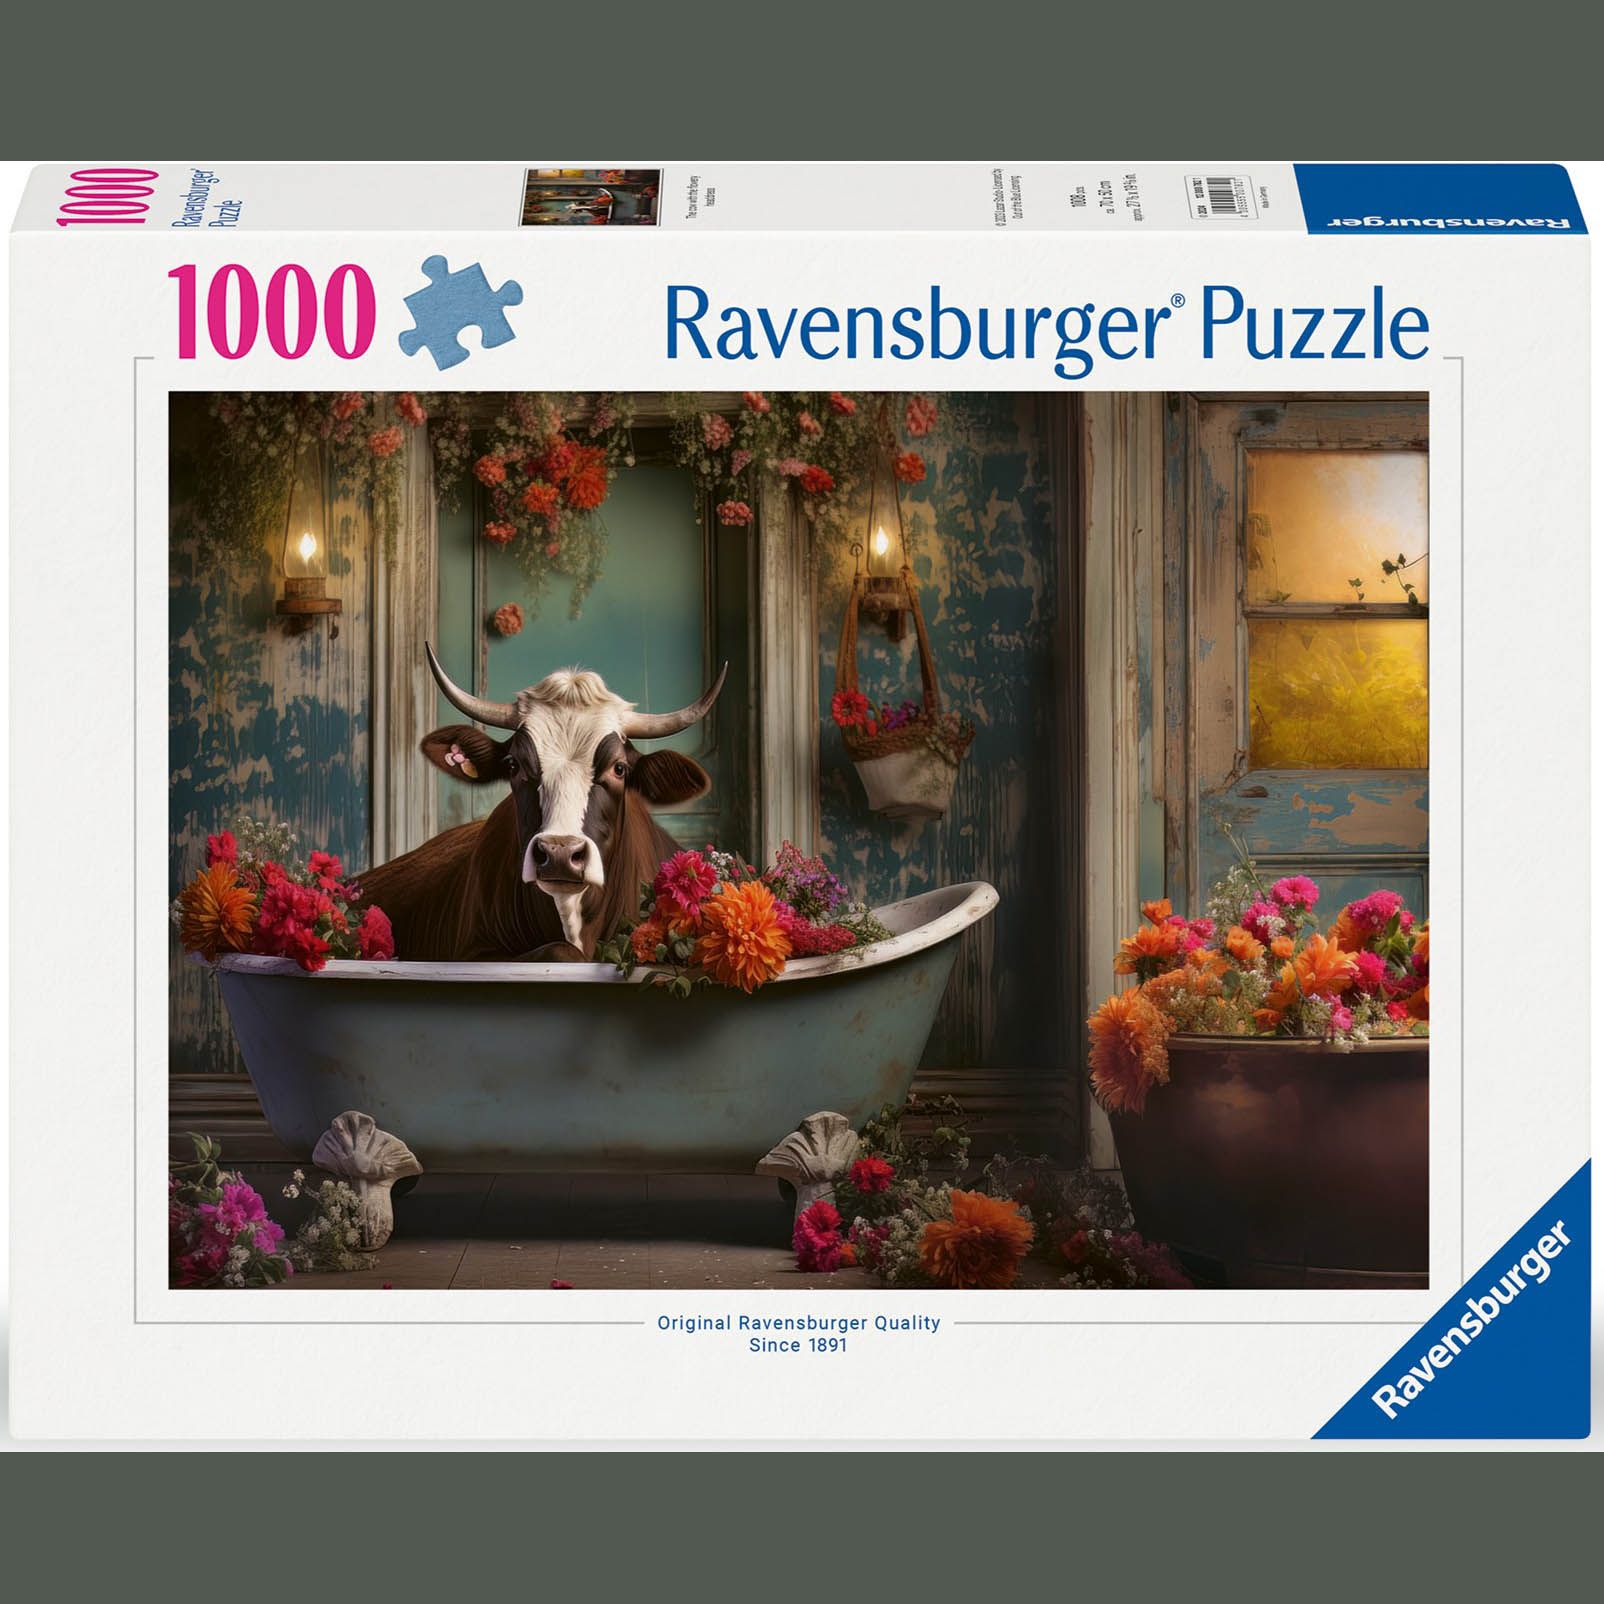 Neugestaltung der Puzzle-Verpackungen von Ravensburger